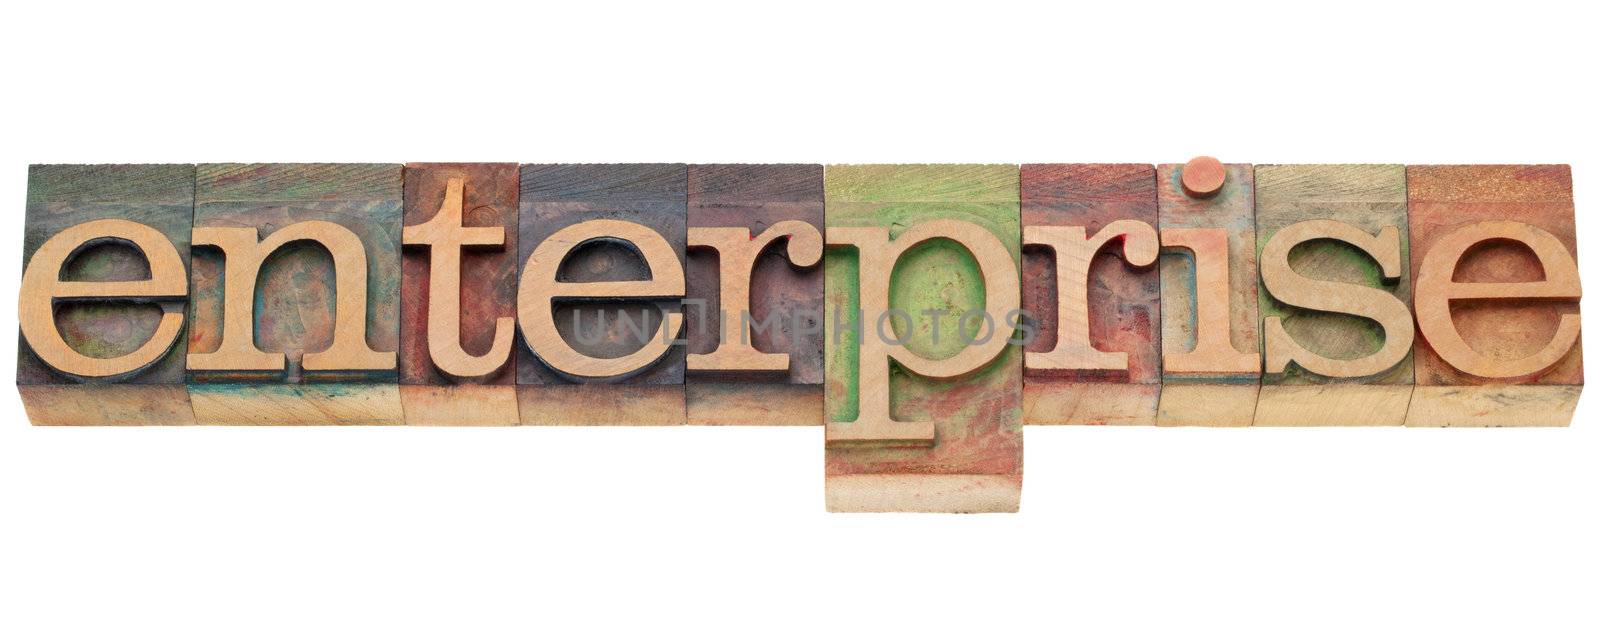 enterprise - isolated word in vintage wood letterpress printing blocks